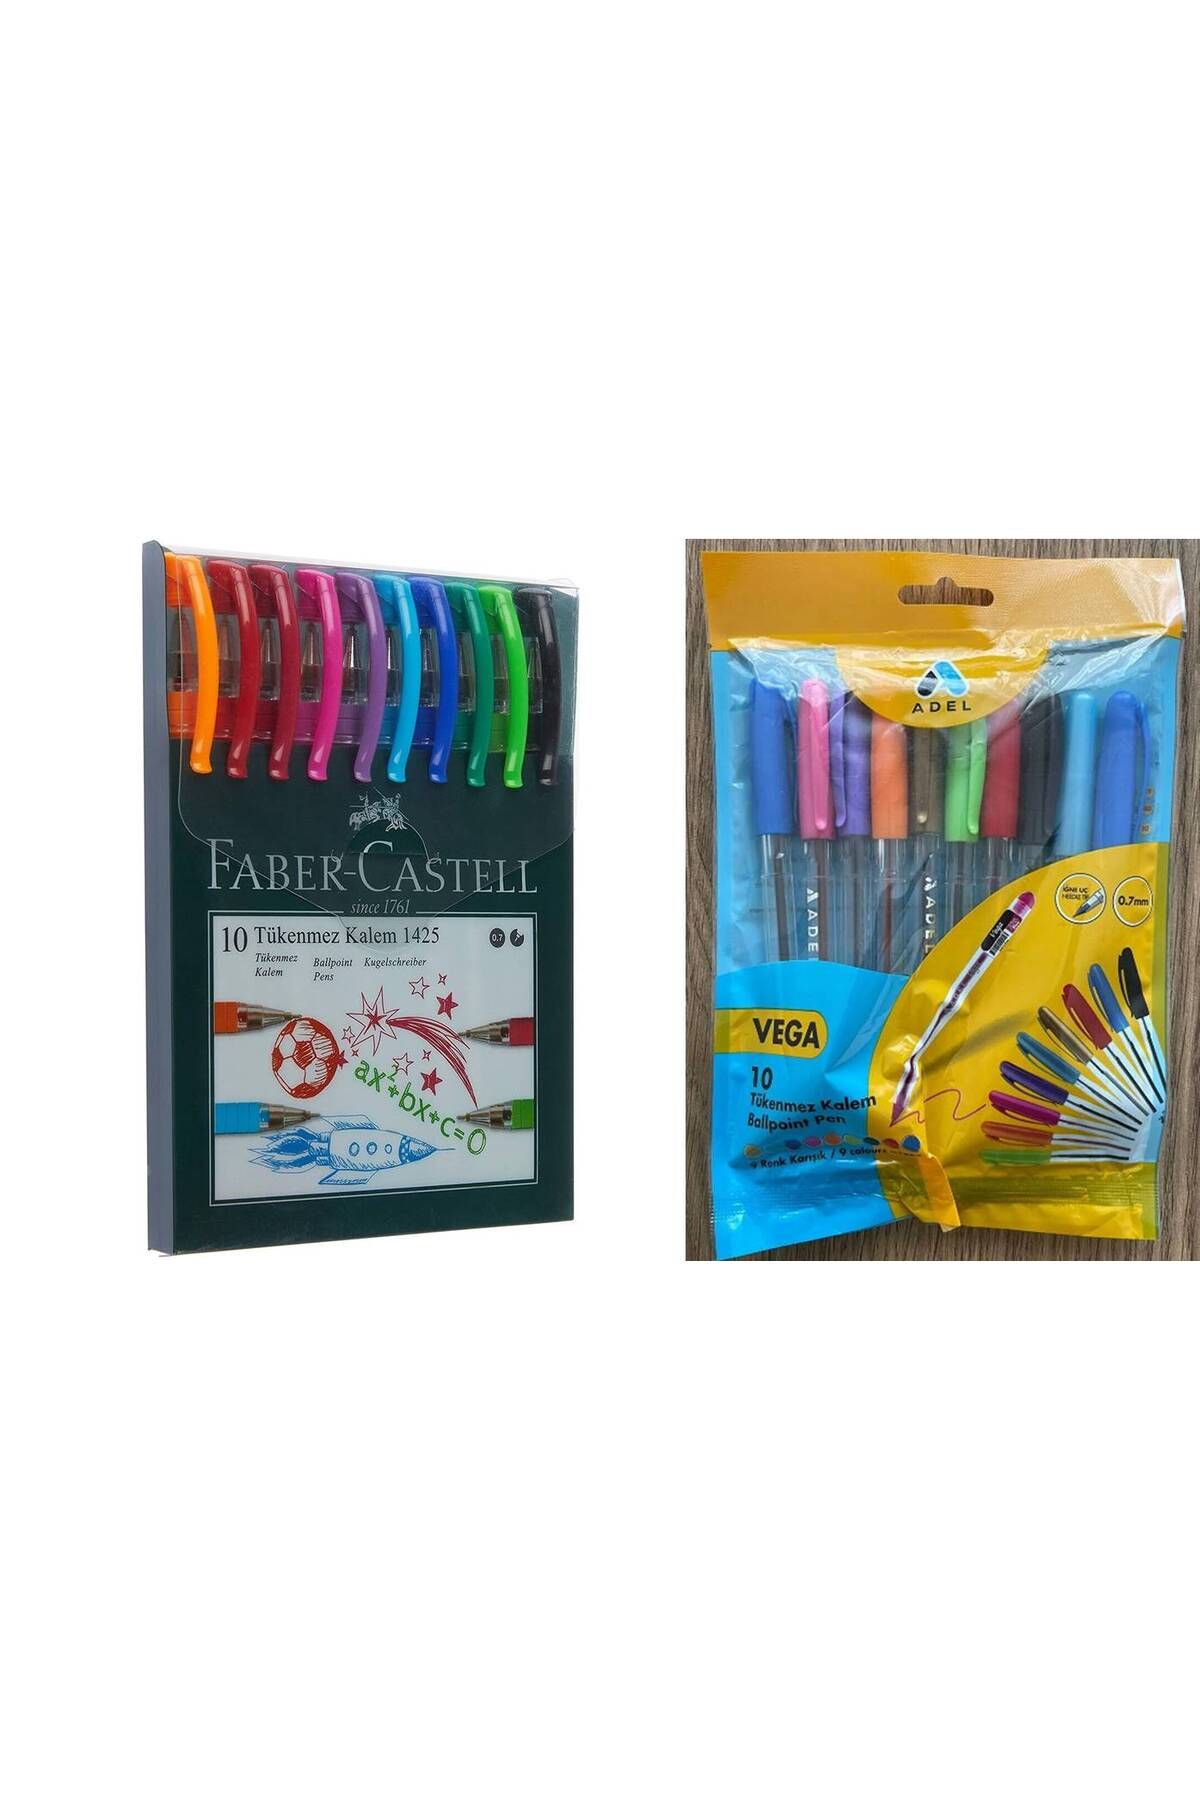 Faber Castell 1425 Tükenmez Kalem Ailesi 10 lu + Tükenmez Kalem Vega Karışık Renkli Kalem 10 lu Set